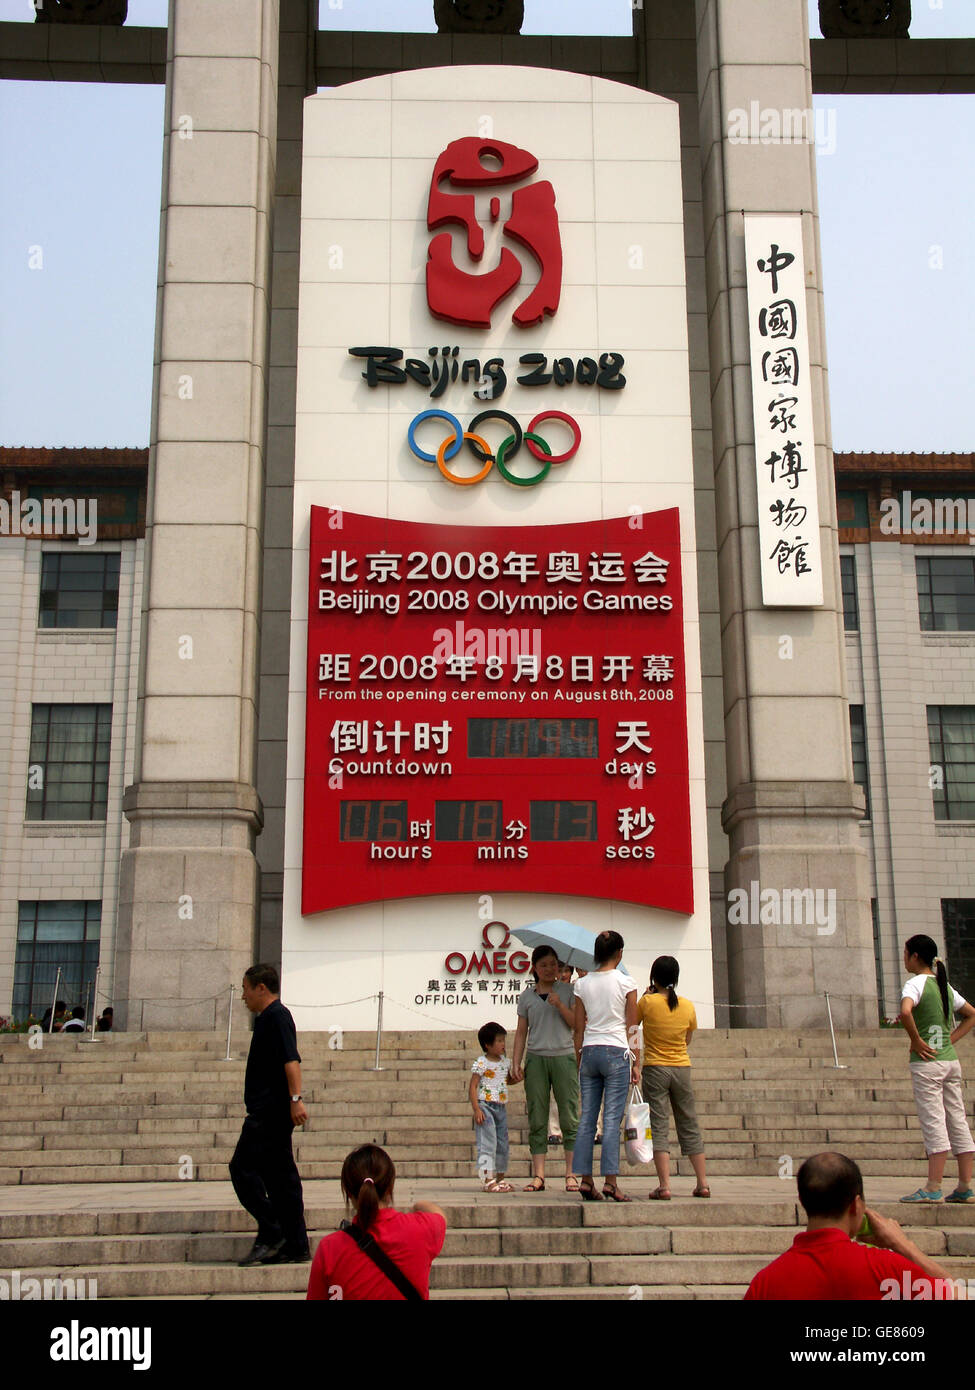 Eine elektronische Uhr zählt die Zeit bis zur Eröffnung der 2008 Olympische Spiele Peking, China. Stockfoto